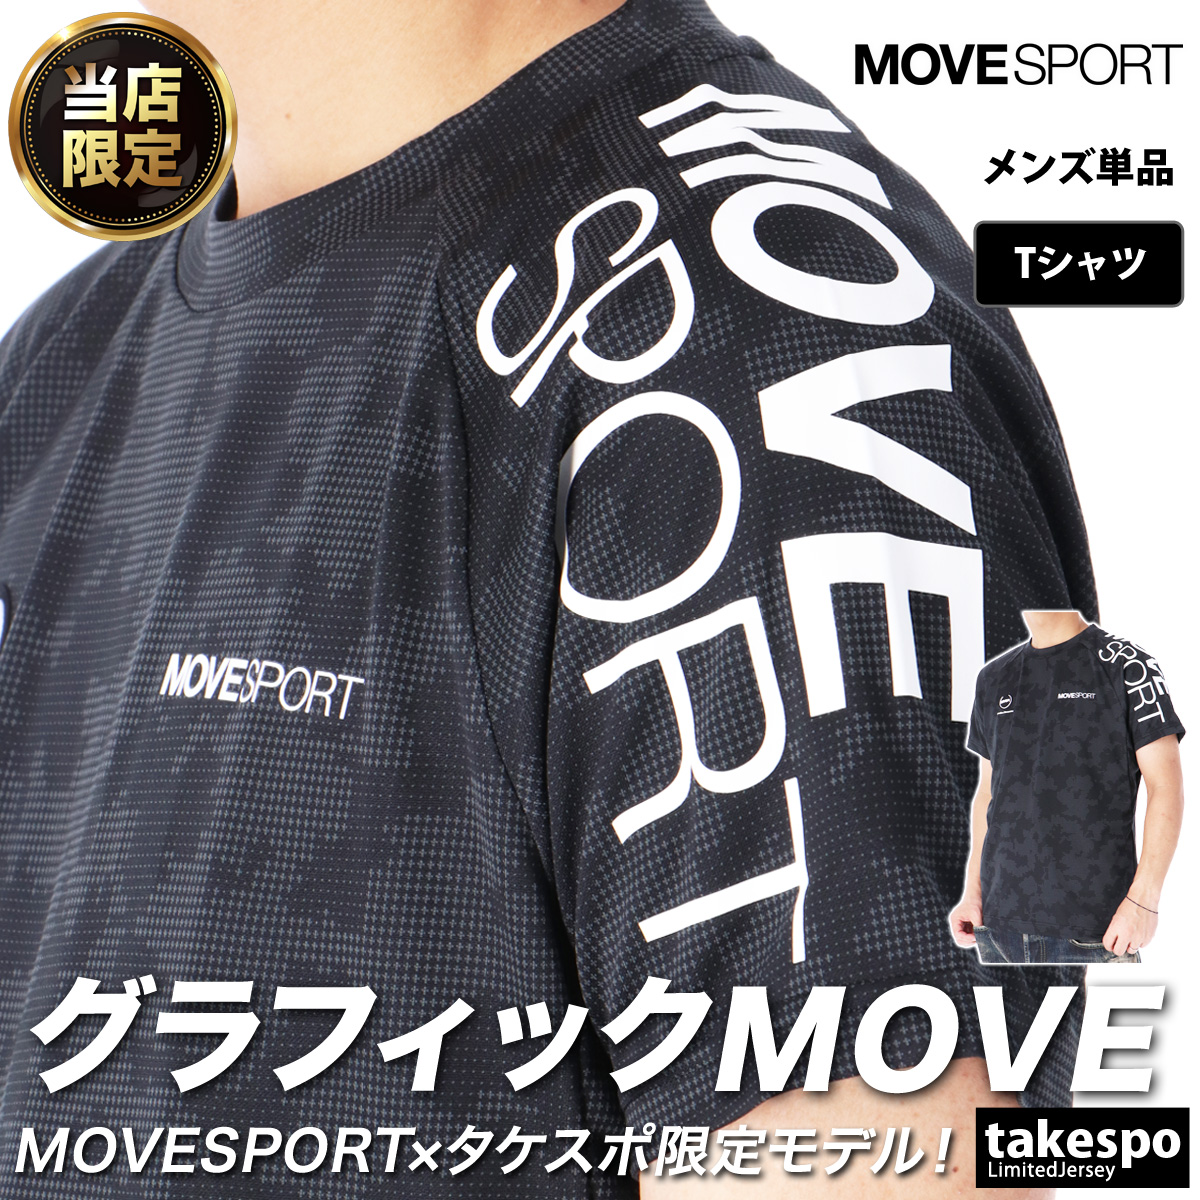 ムーブスポーツ デサント Tシャツ メンズ 上 MOVESPORT DESCENTE 取扱店舗限定 ...